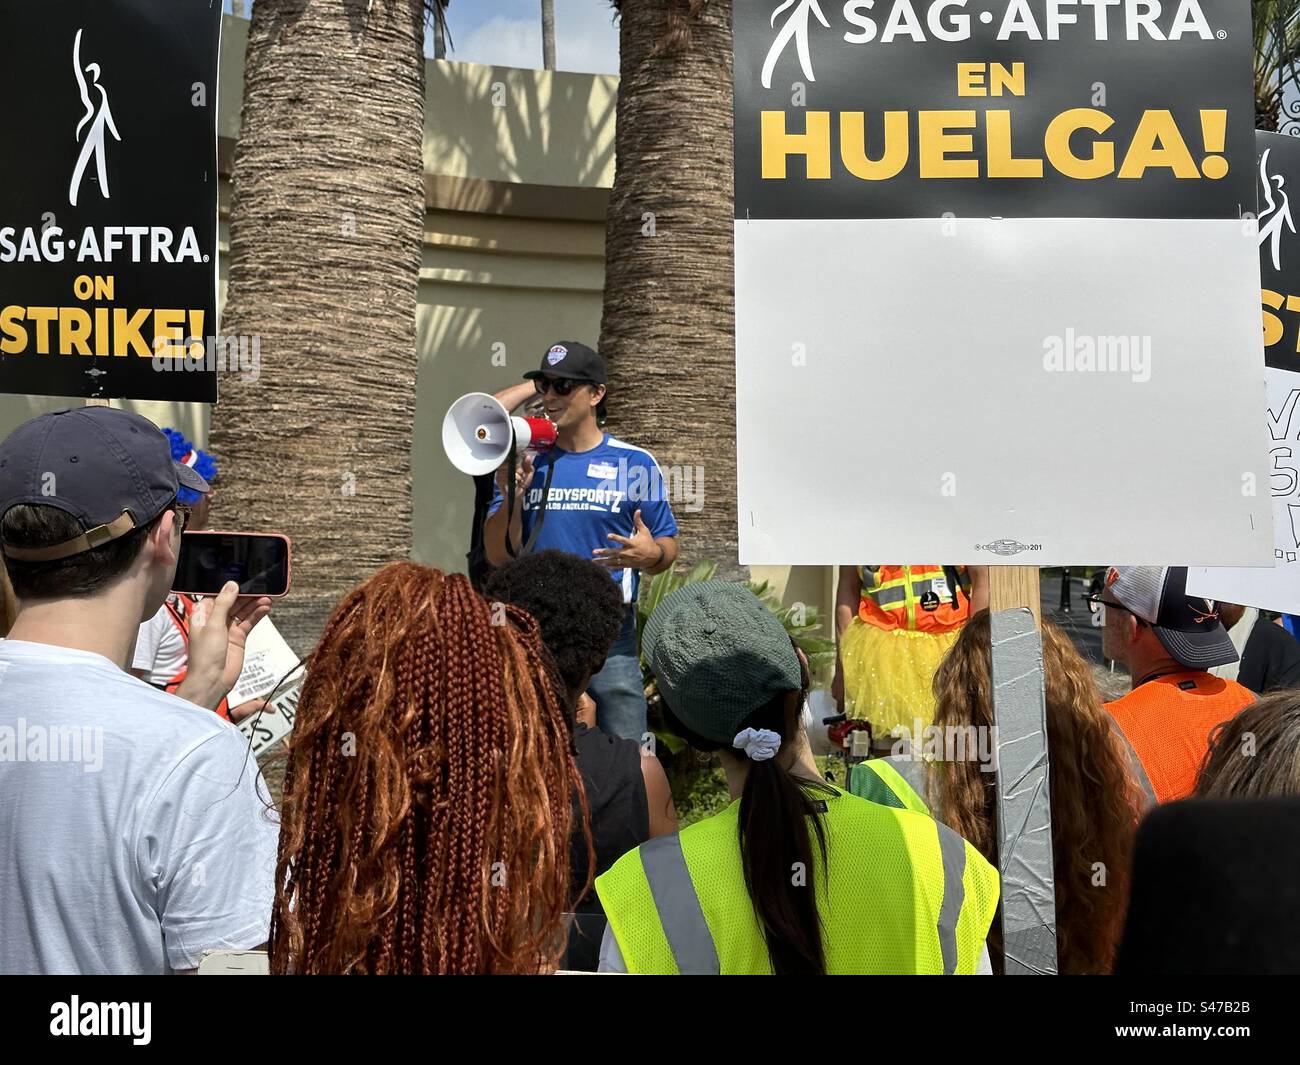 Konstantine Anthony, maire de Burbank et ancien acteur, s'adresse aux membres du SAG-AFTRA et de la WGA lors de piquets de grève aux studios Paramount à Hollywood (19 septembre 3023). Banque D'Images